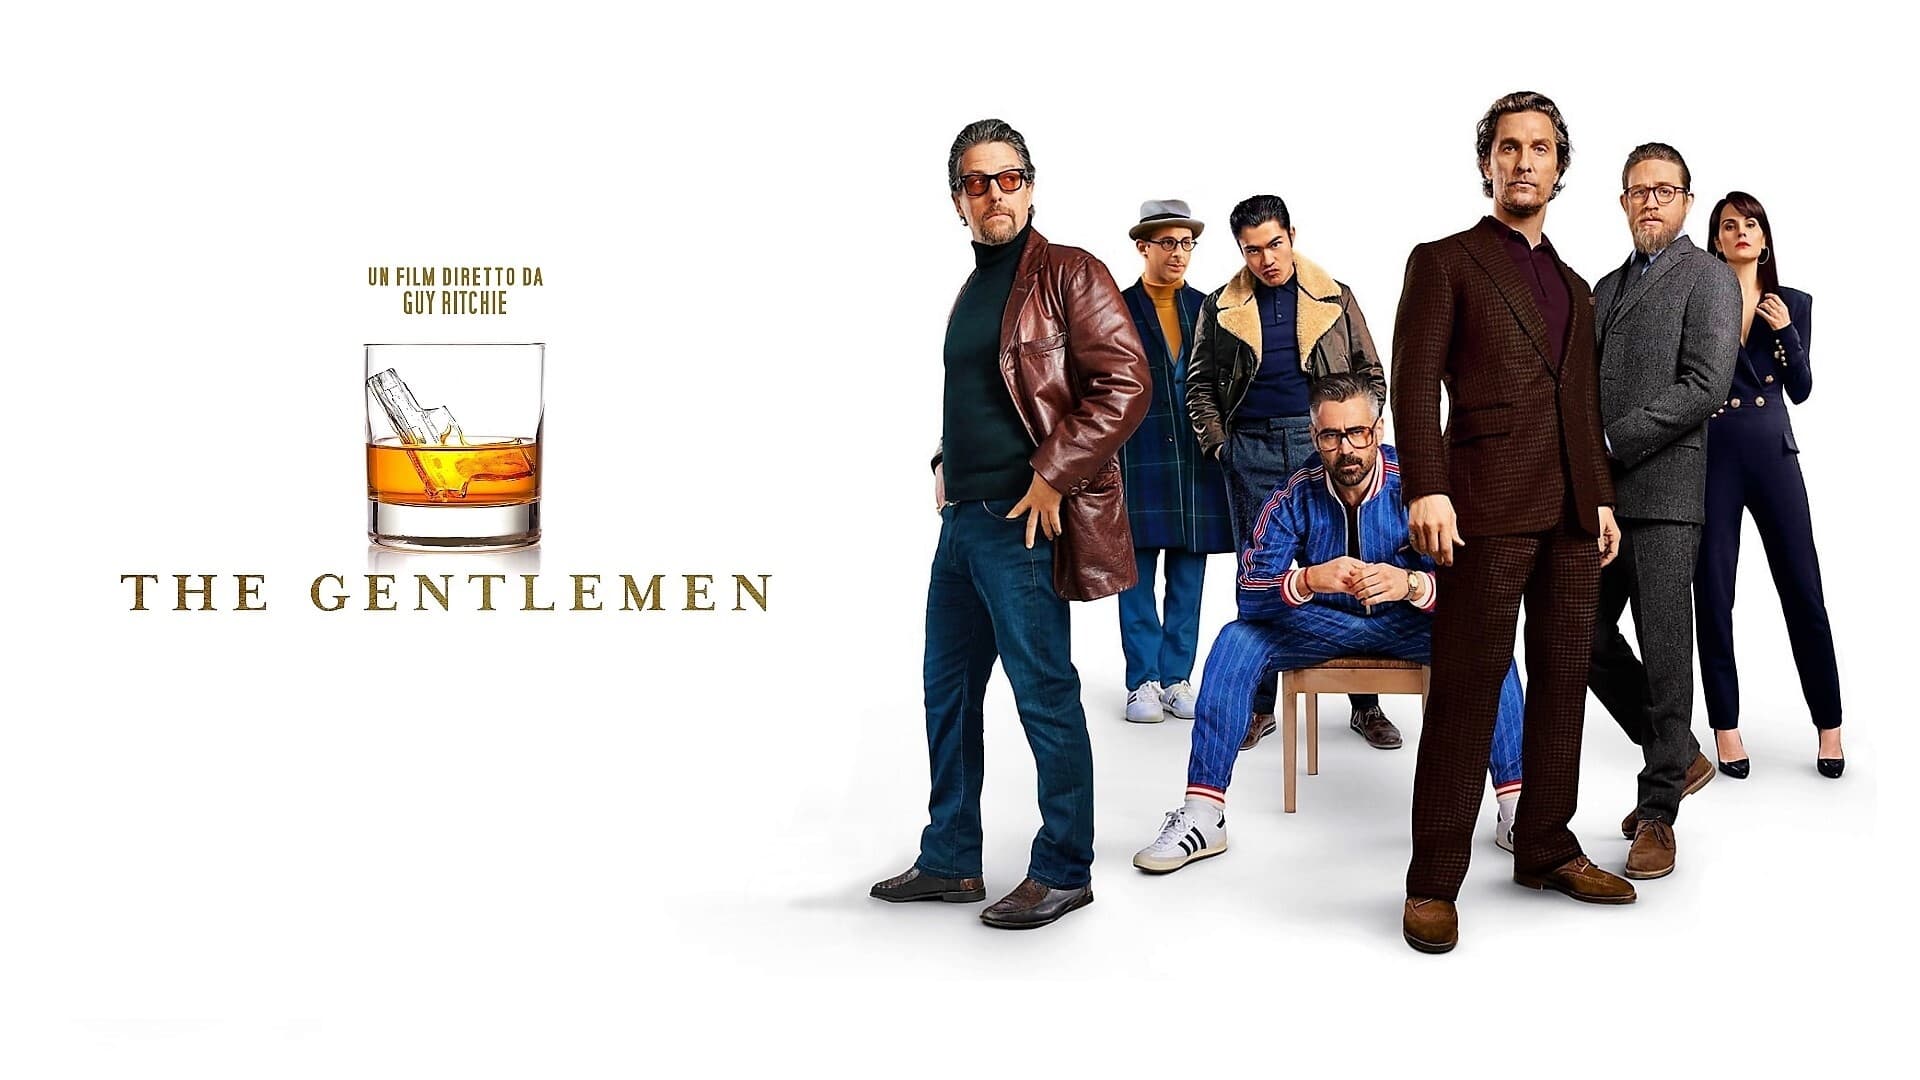 The Gentlemen: Los señores de la mafia